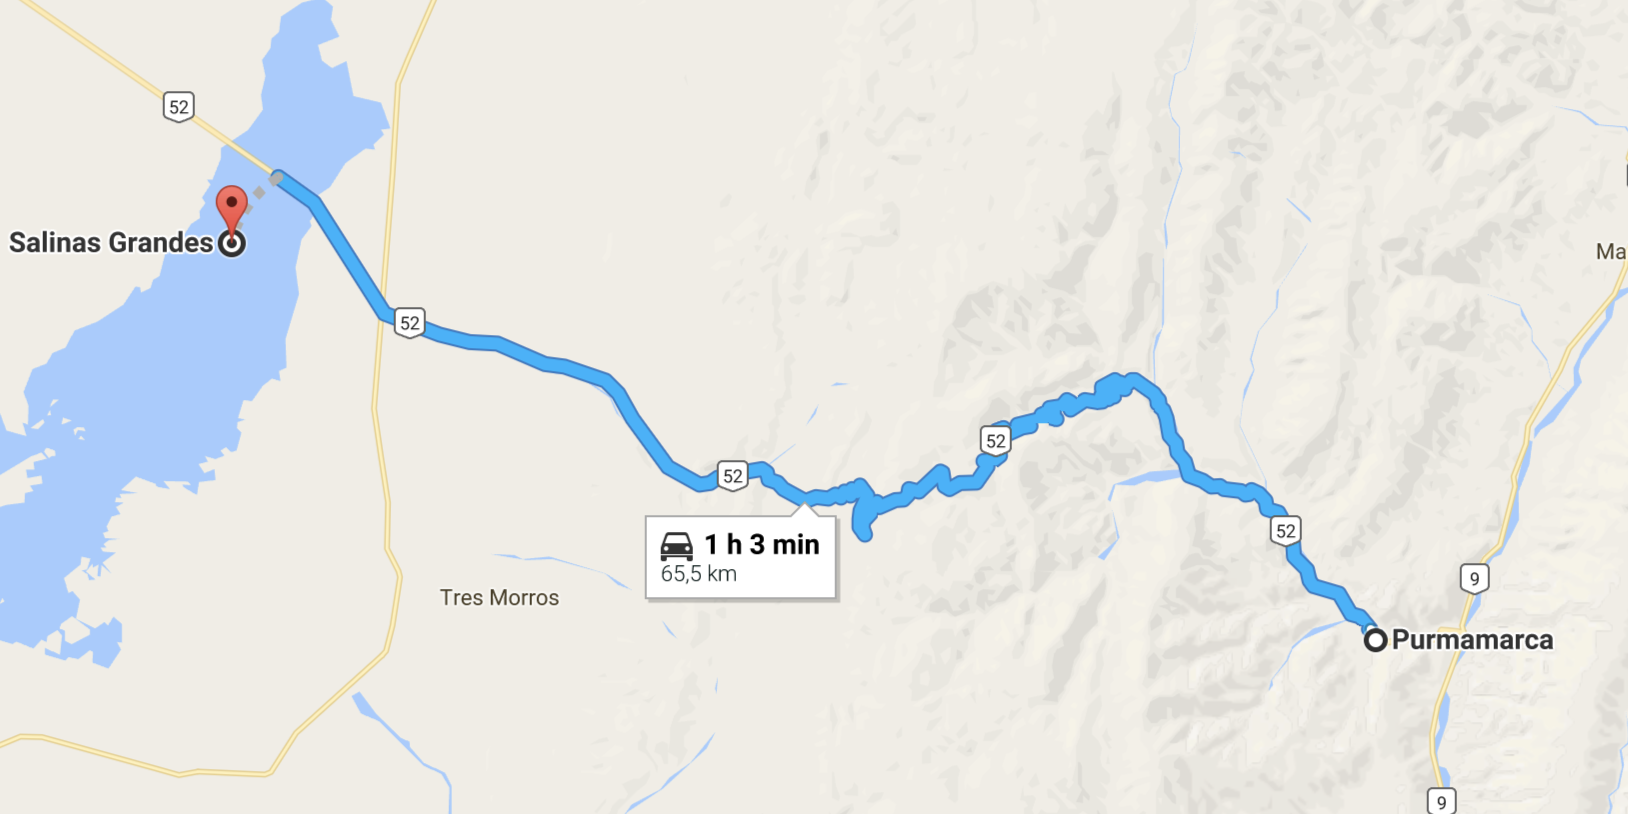 caminho no mapa: de Pumamarca para Salinas, no norte da argentina